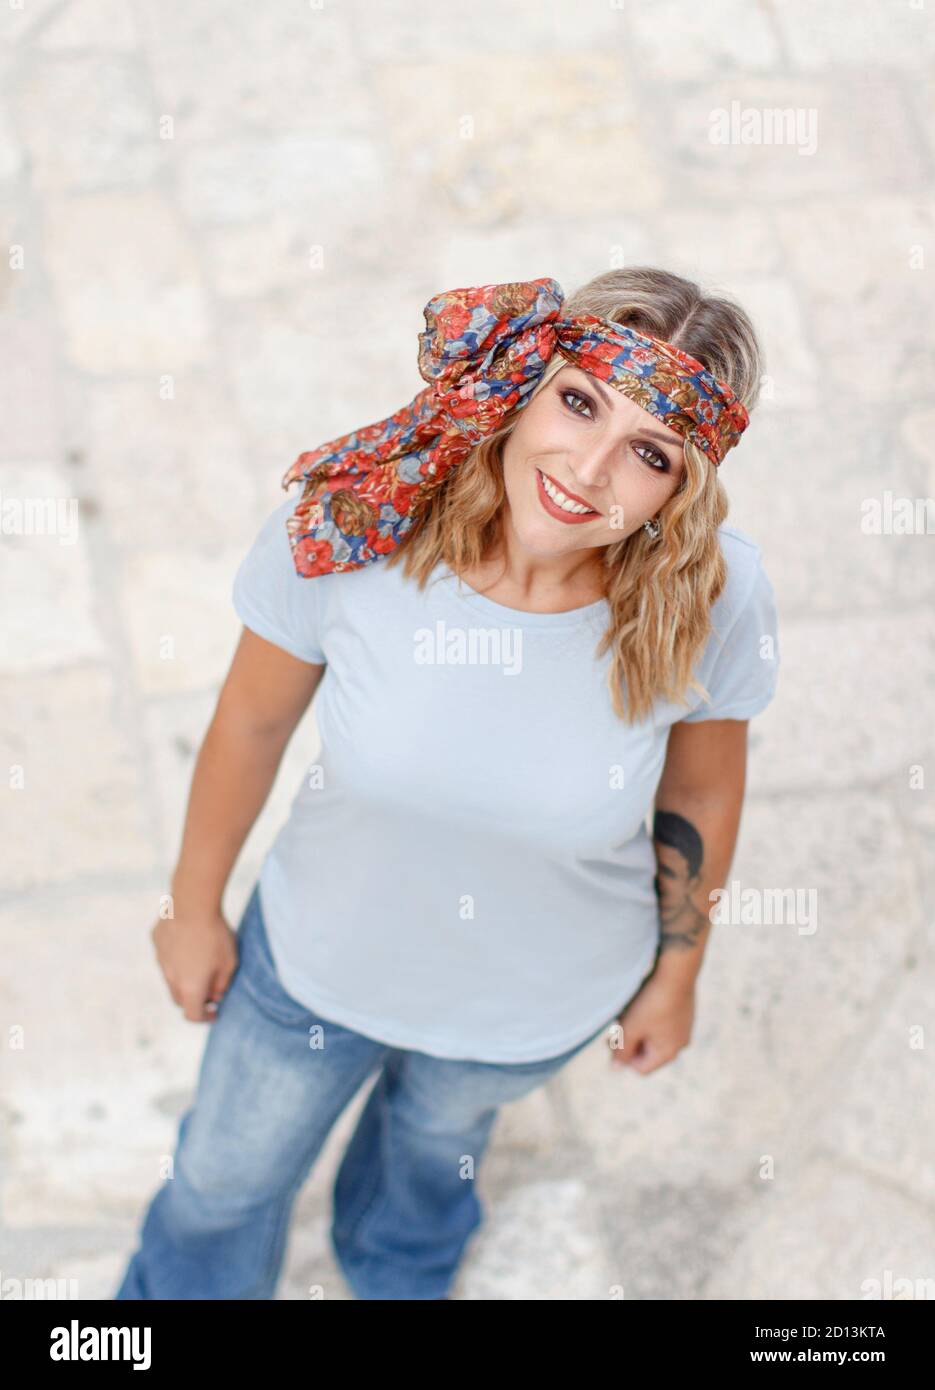 Jeunes femmes avec un t-shirt et un bandeau foulard Photo Stock - Alamy